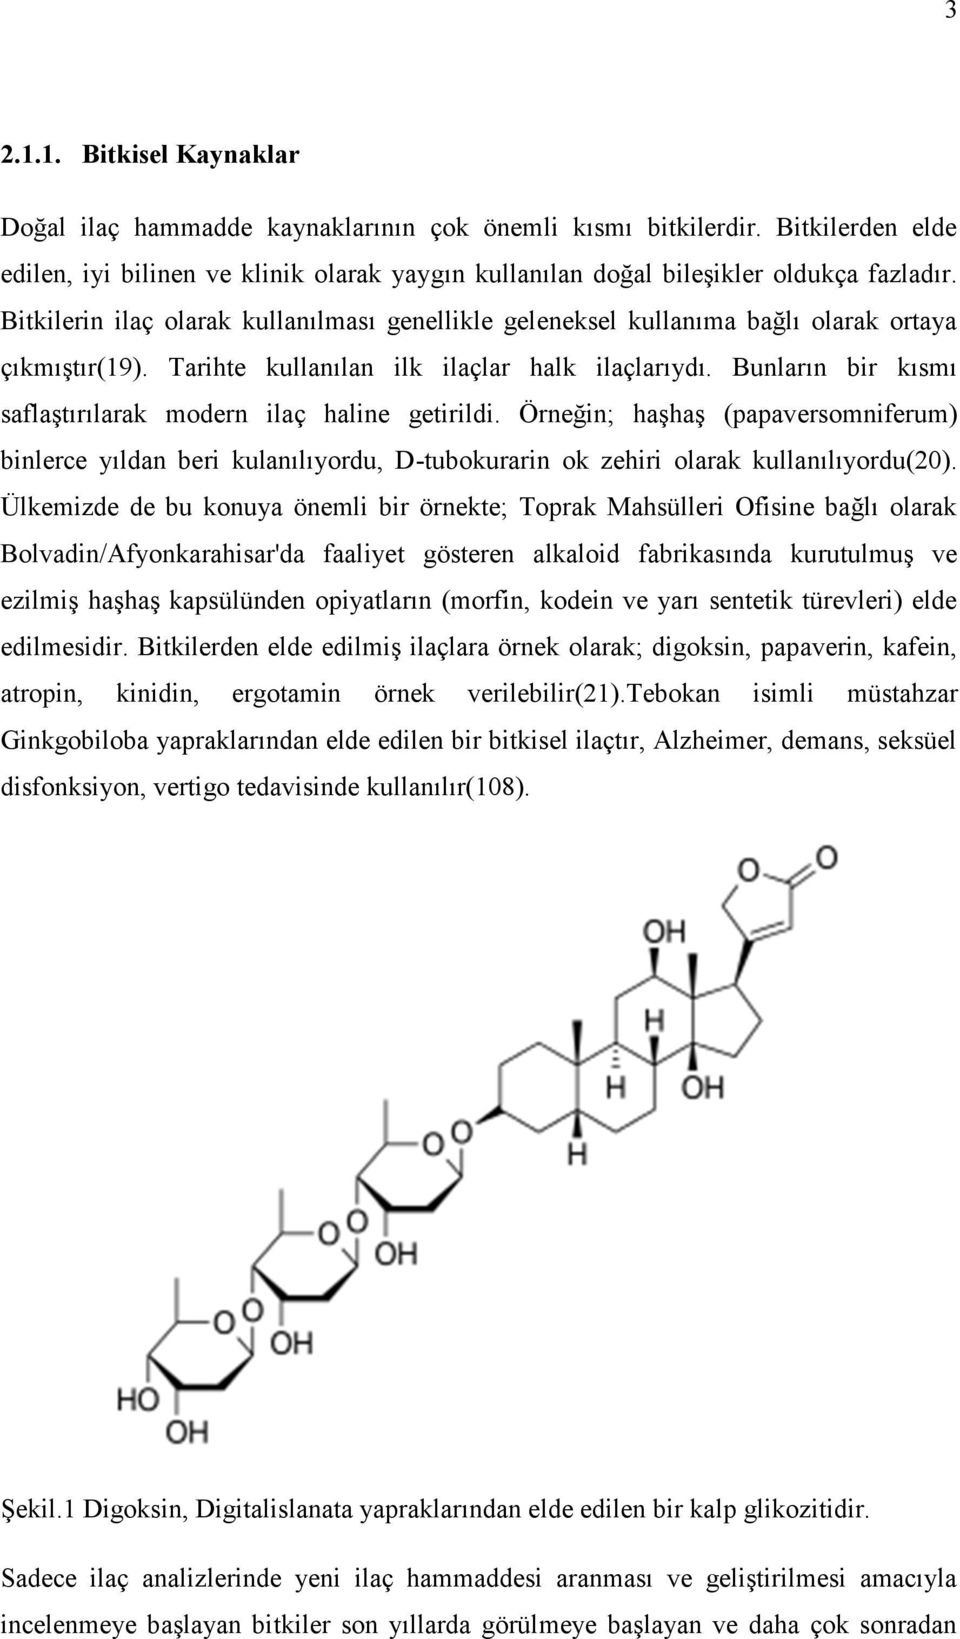 Bunların bir kısmı saflaştırılarak modern ilaç haline getirildi. Örneğin; haşhaş (papaversomniferum) binlerce yıldan beri kulanılıyordu, D-tubokurarin ok zehiri olarak kullanılıyordu(20).